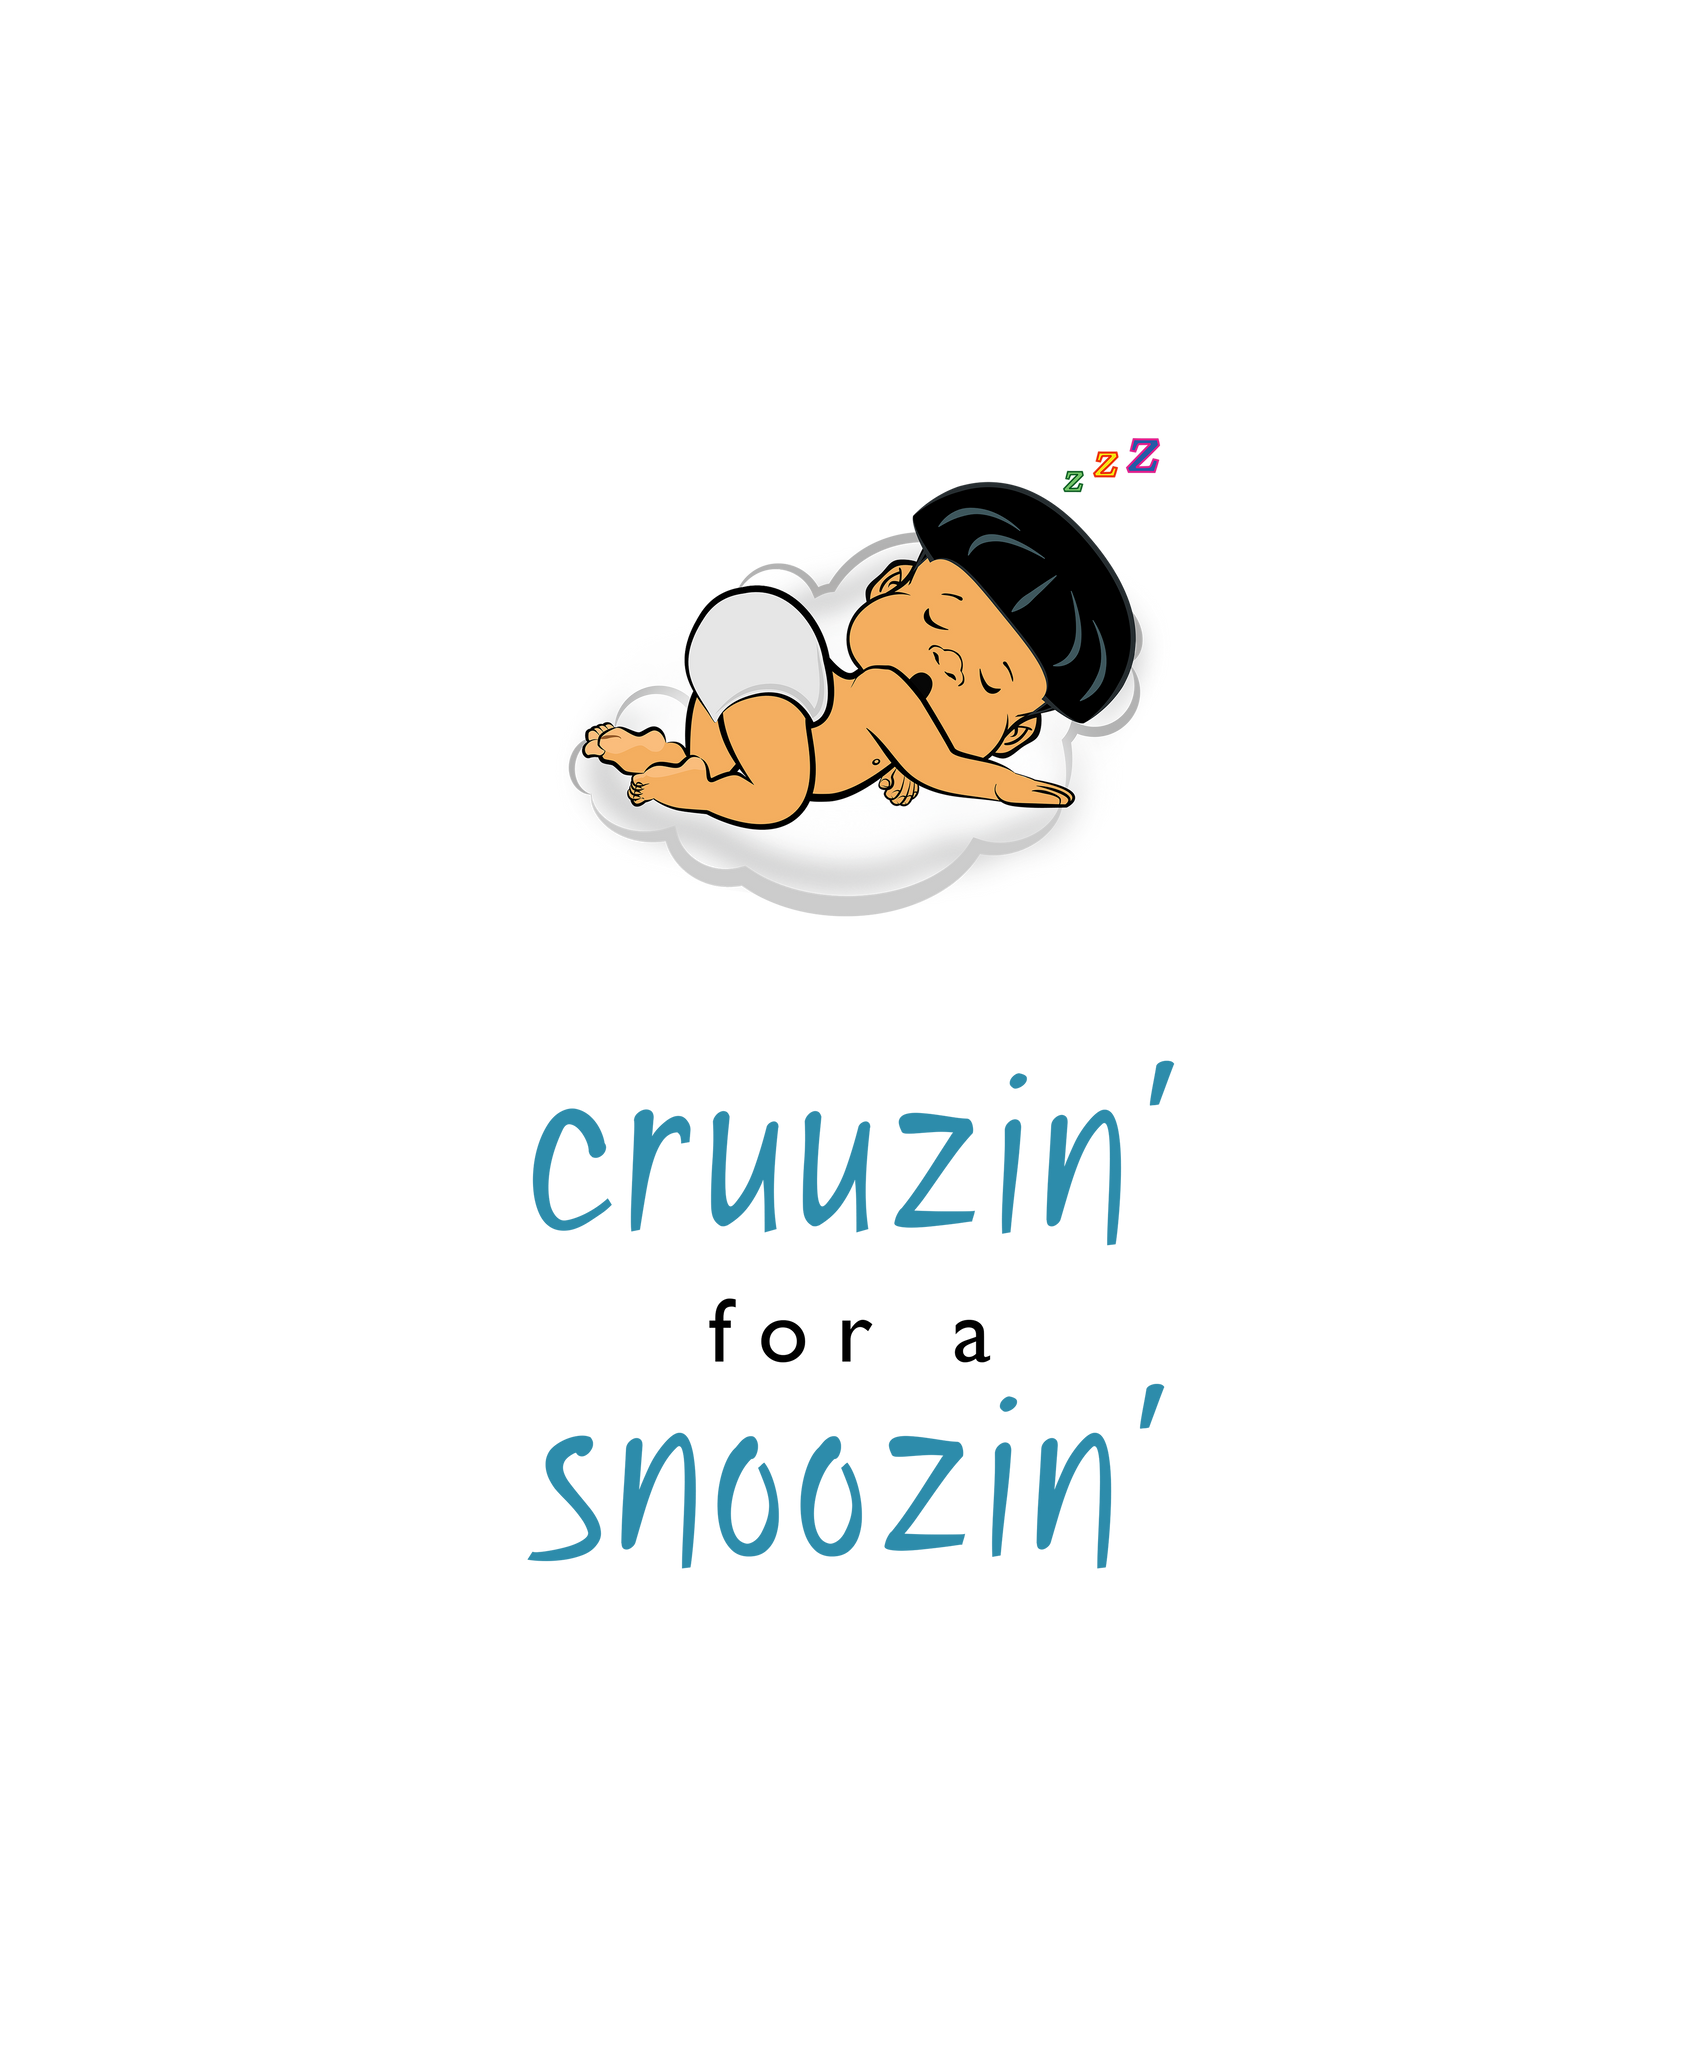 PBTZ0687_cruuzin' for a snoozin'_boy_1